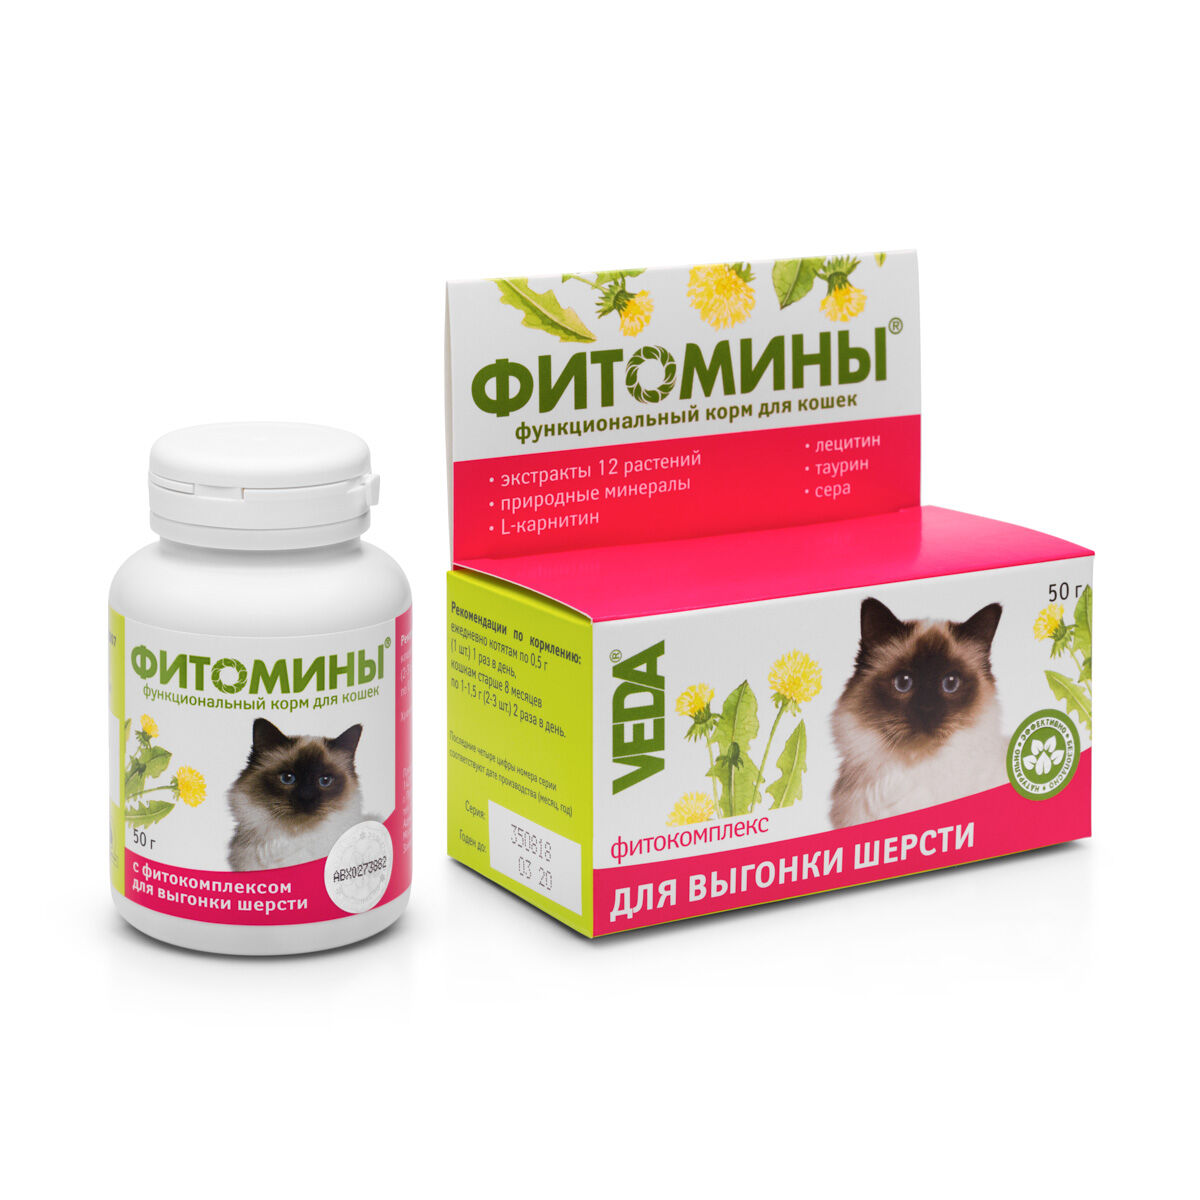 ФитоМины функциональный корм для кошек с фитокомплексом для выгонки шерсти 100таб.